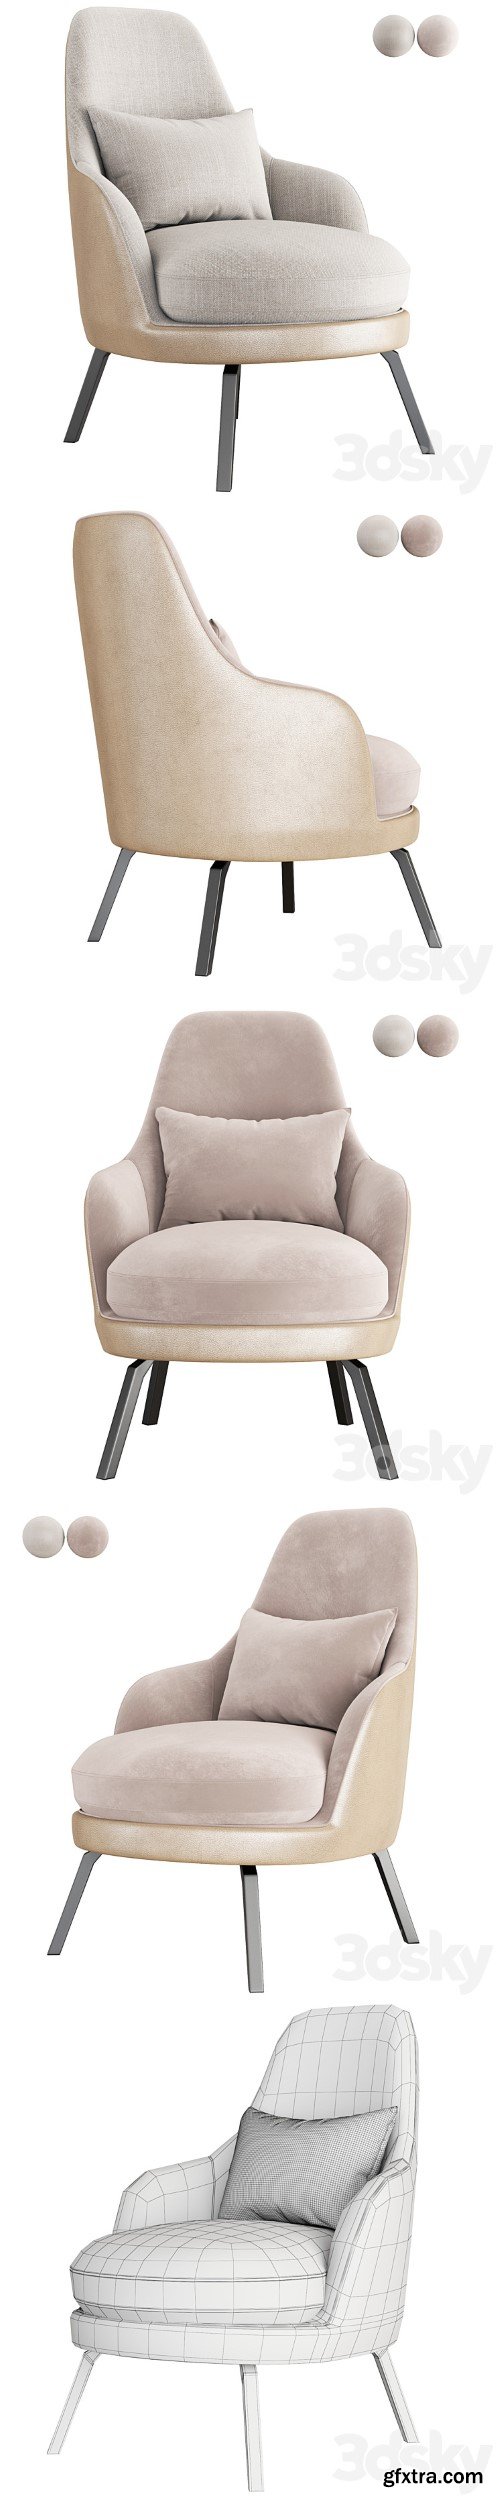 Le Comfort Air armchair